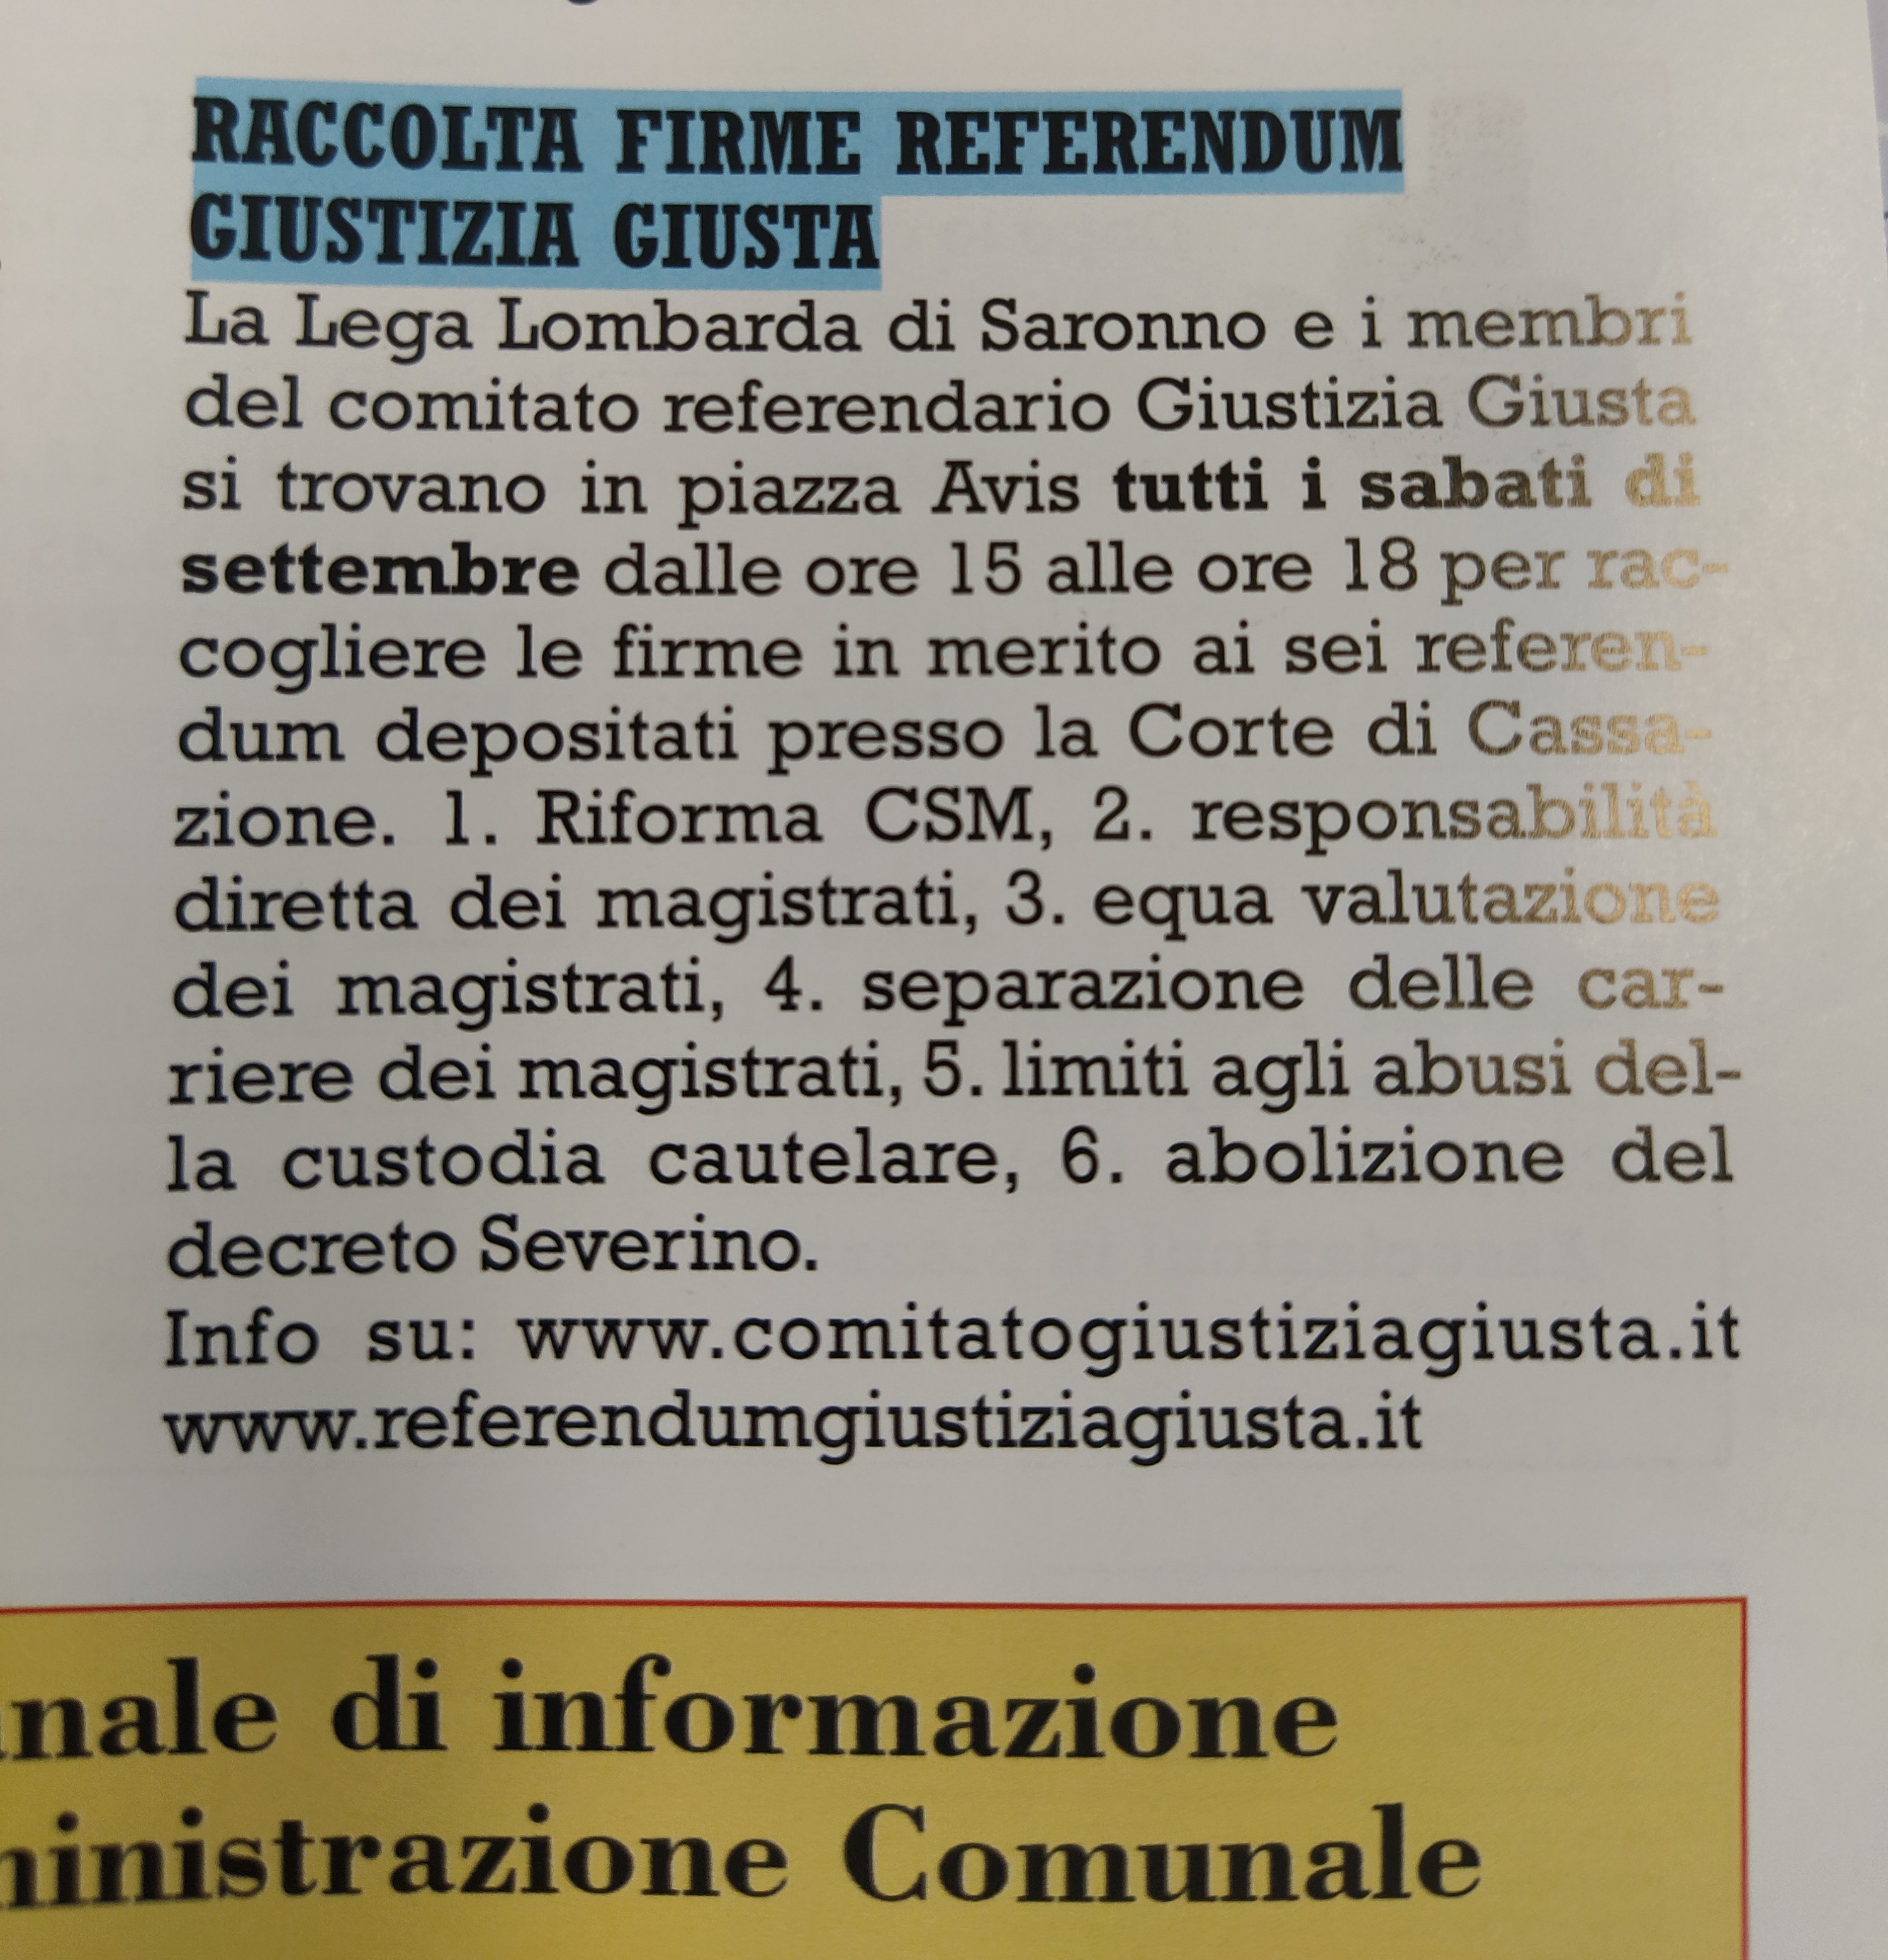 Comune risponde a Veronesi: “La nota sul referendum della Giustizia è stata regolarmente pubblicata sul Saronno Sette”